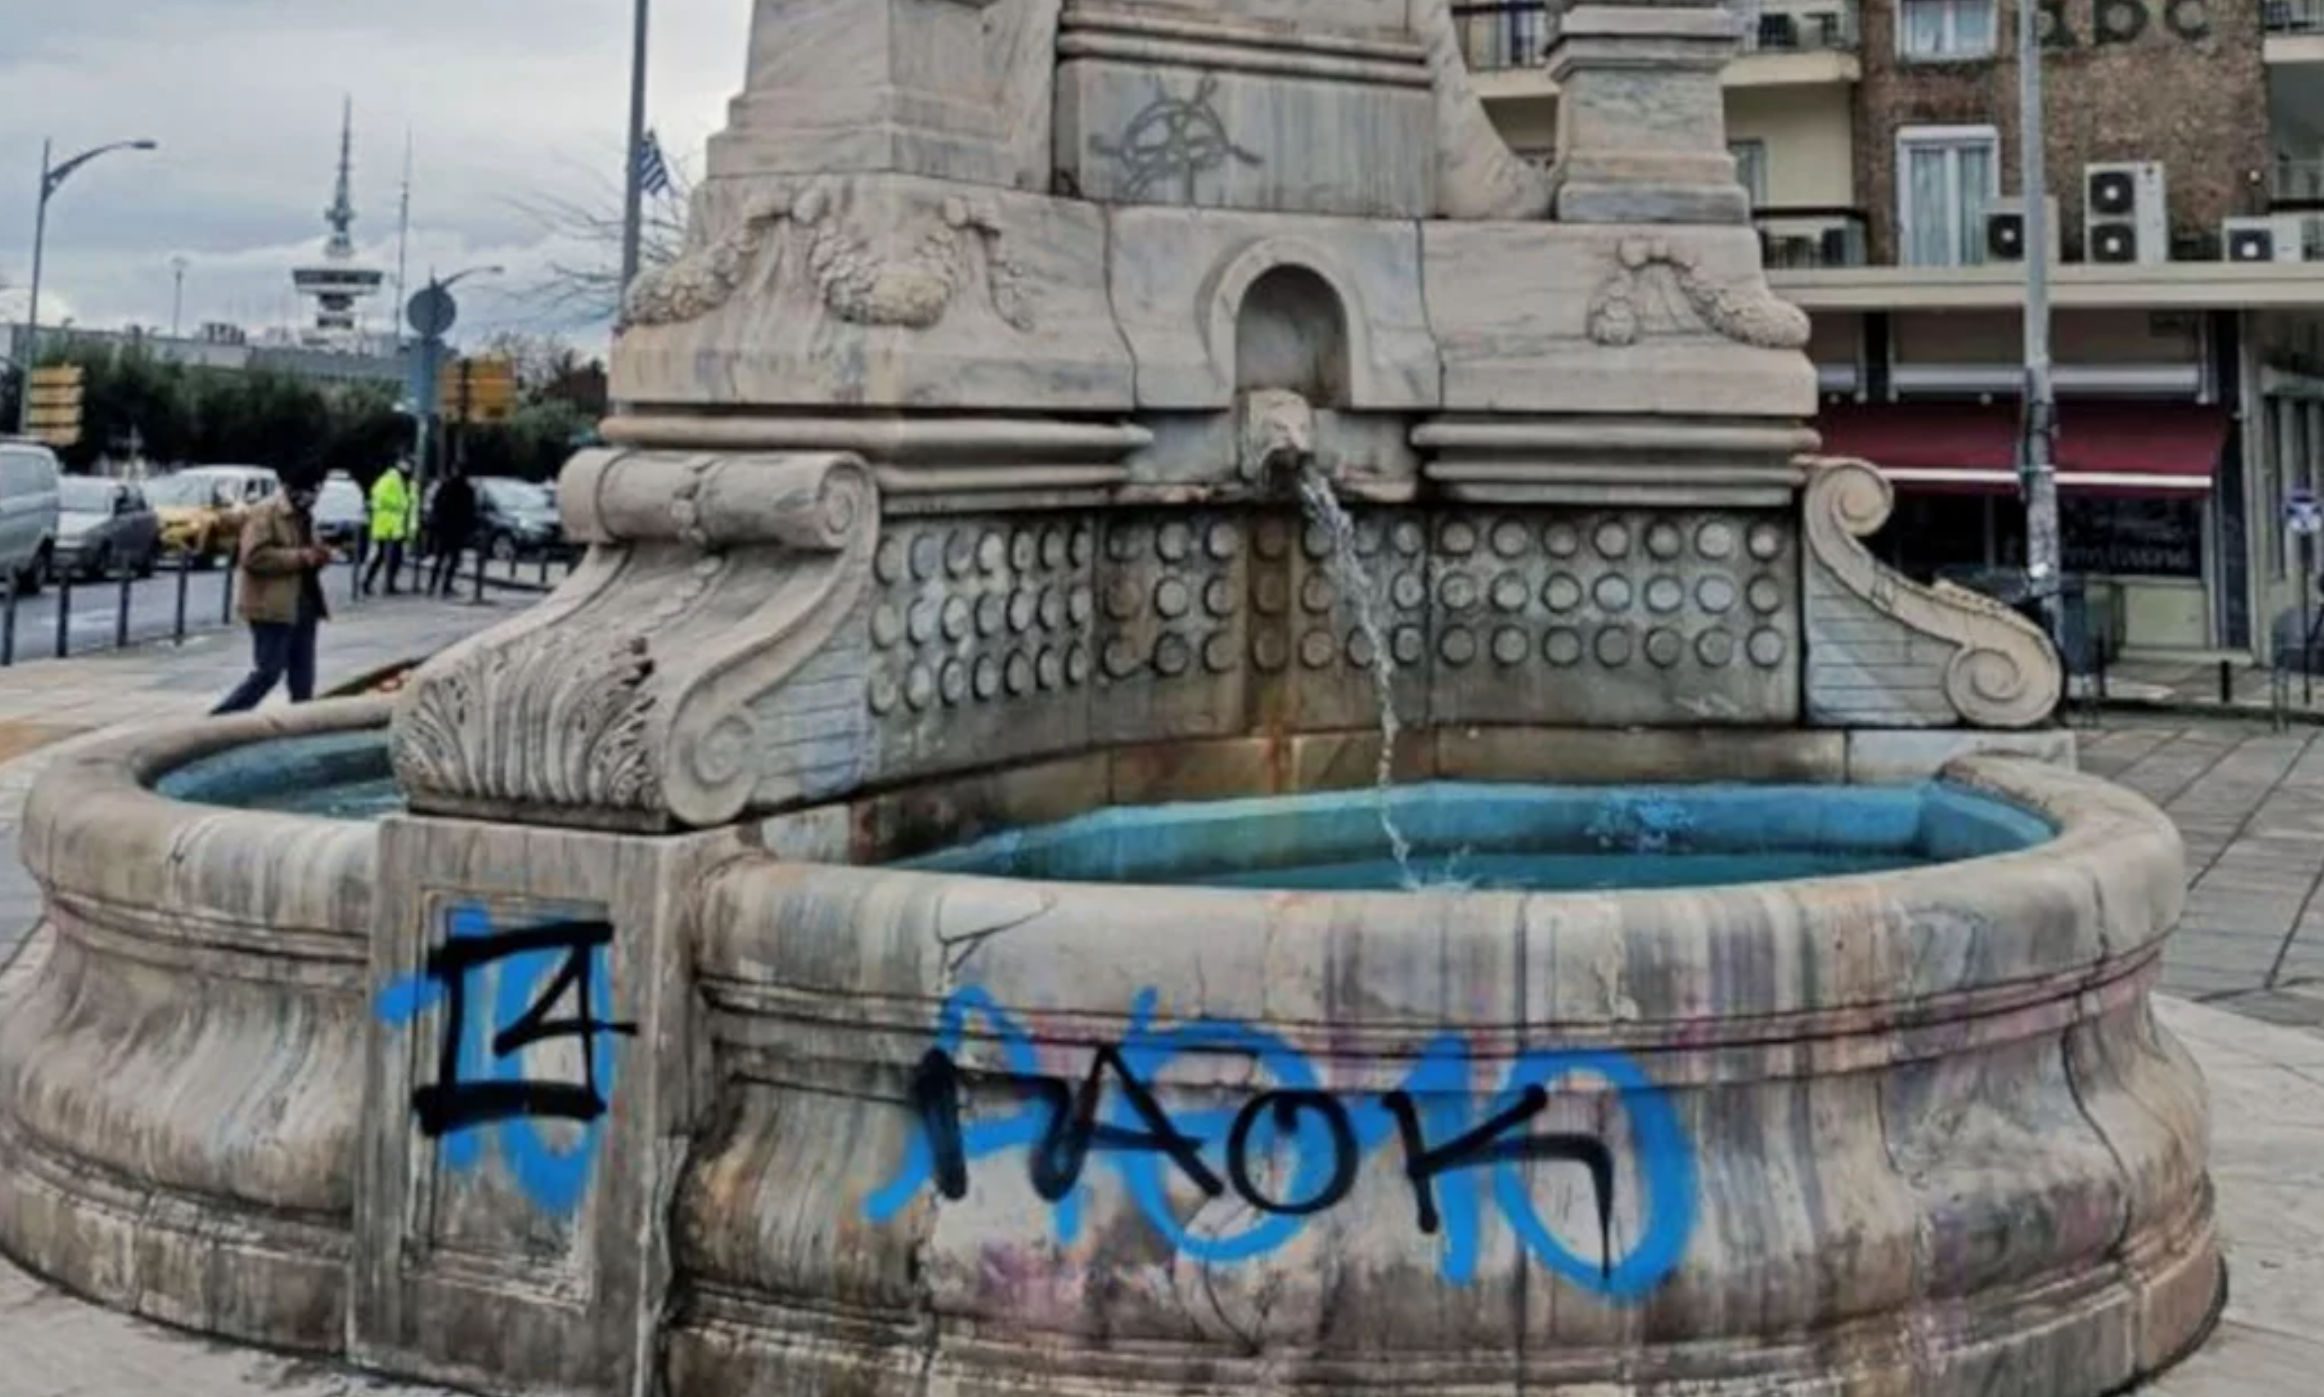 Βανδάλισαν με γκράφιτι εμβληματικό σιντριβάνι -Το καθάρισε ο δήμος (pics)